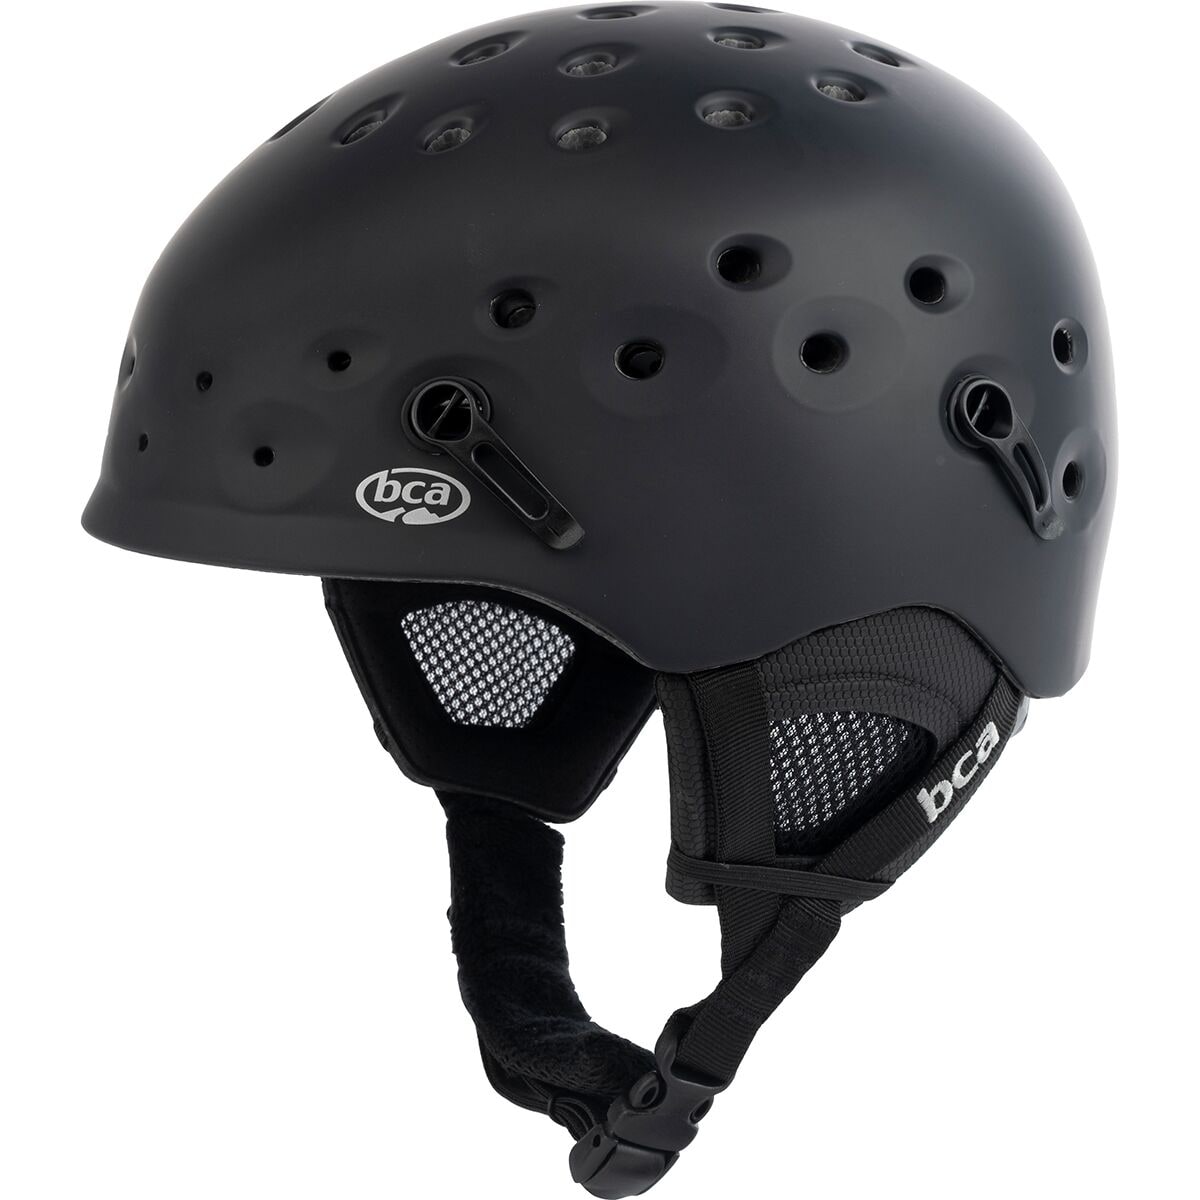 Backcountry Access BC Air Helmet Black